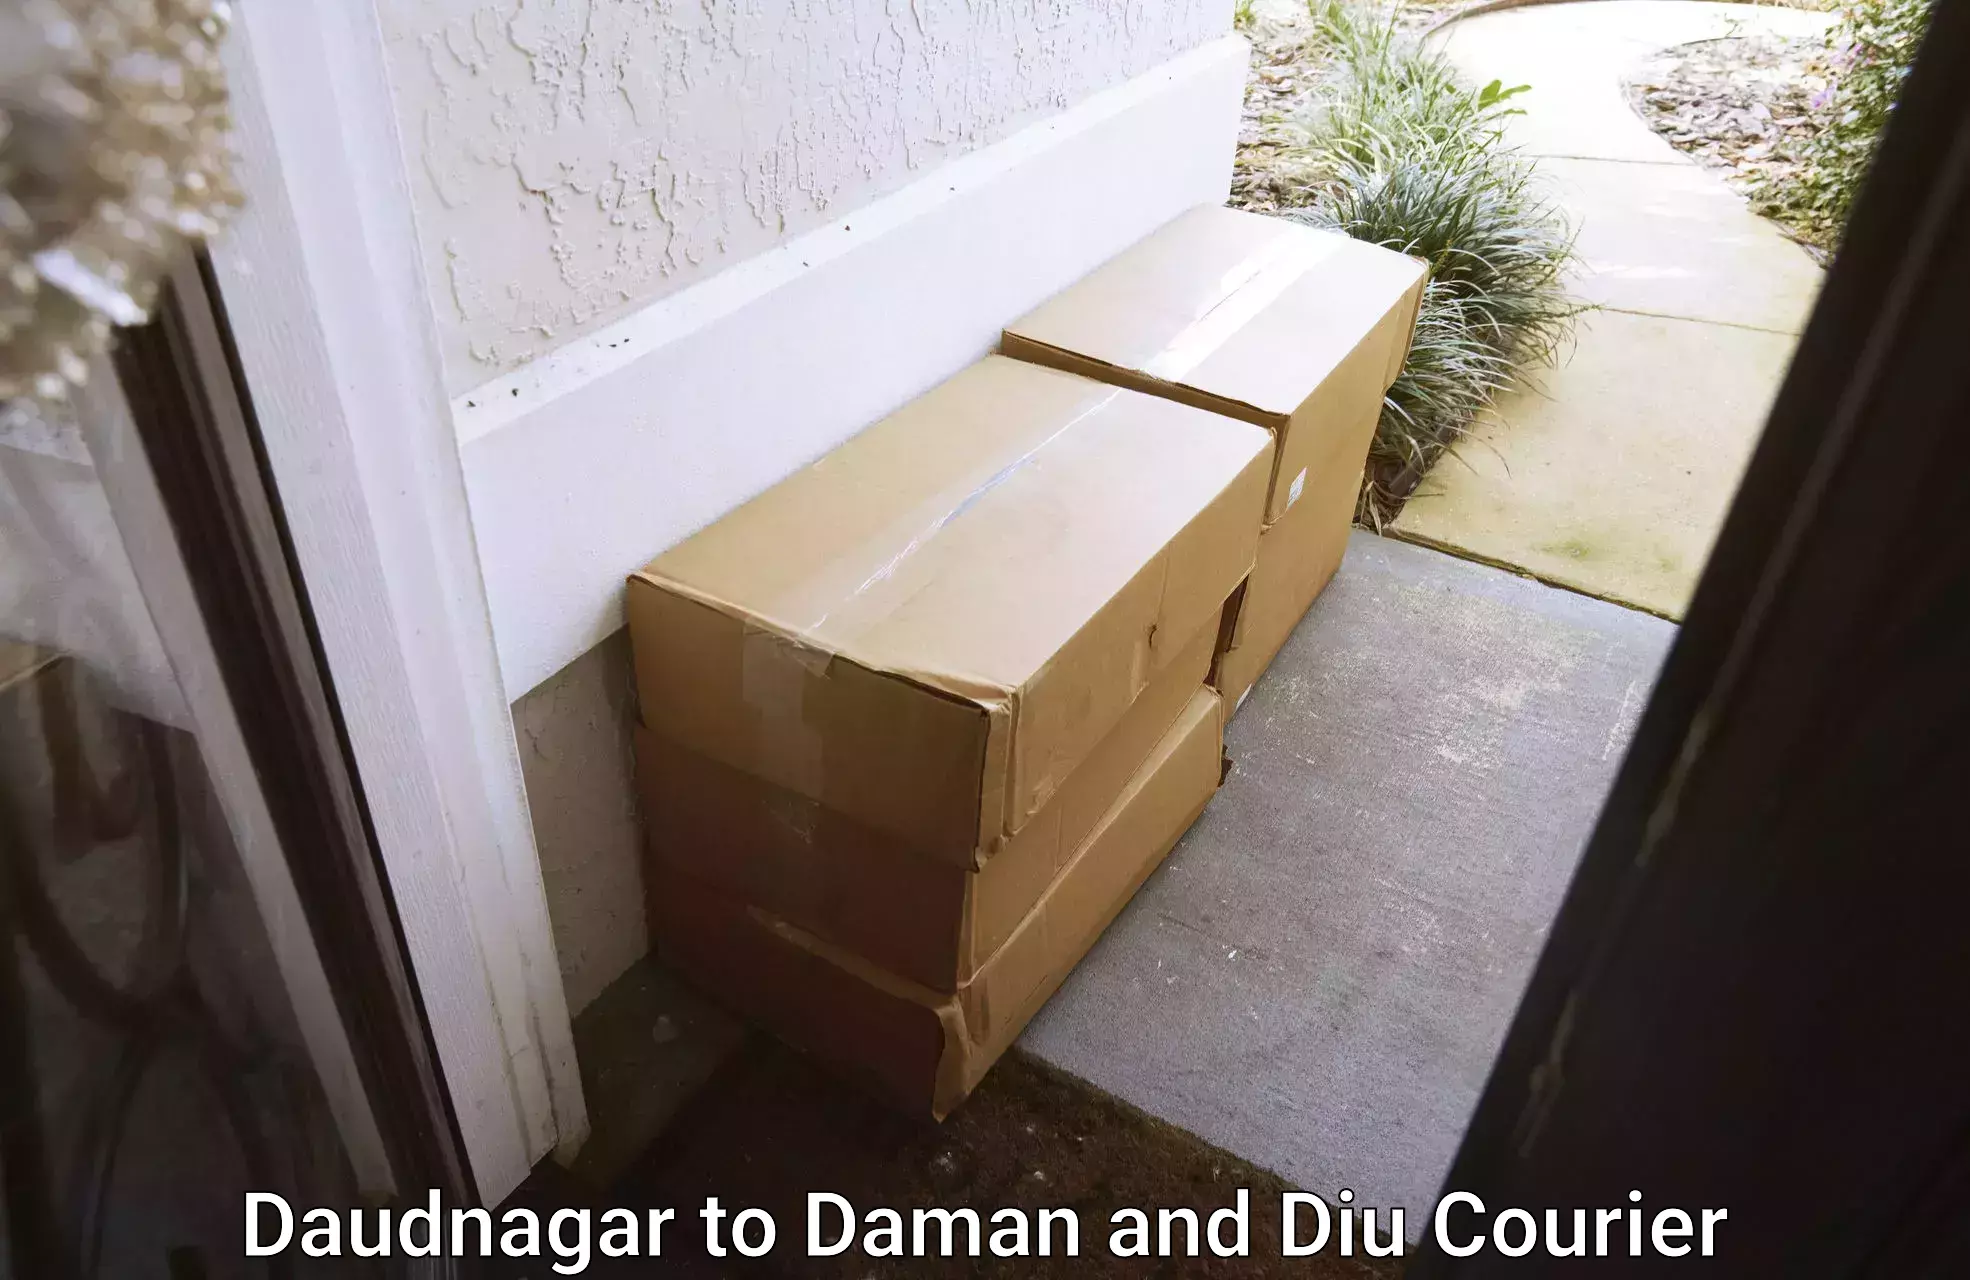 Reliable movers Daudnagar to Diu